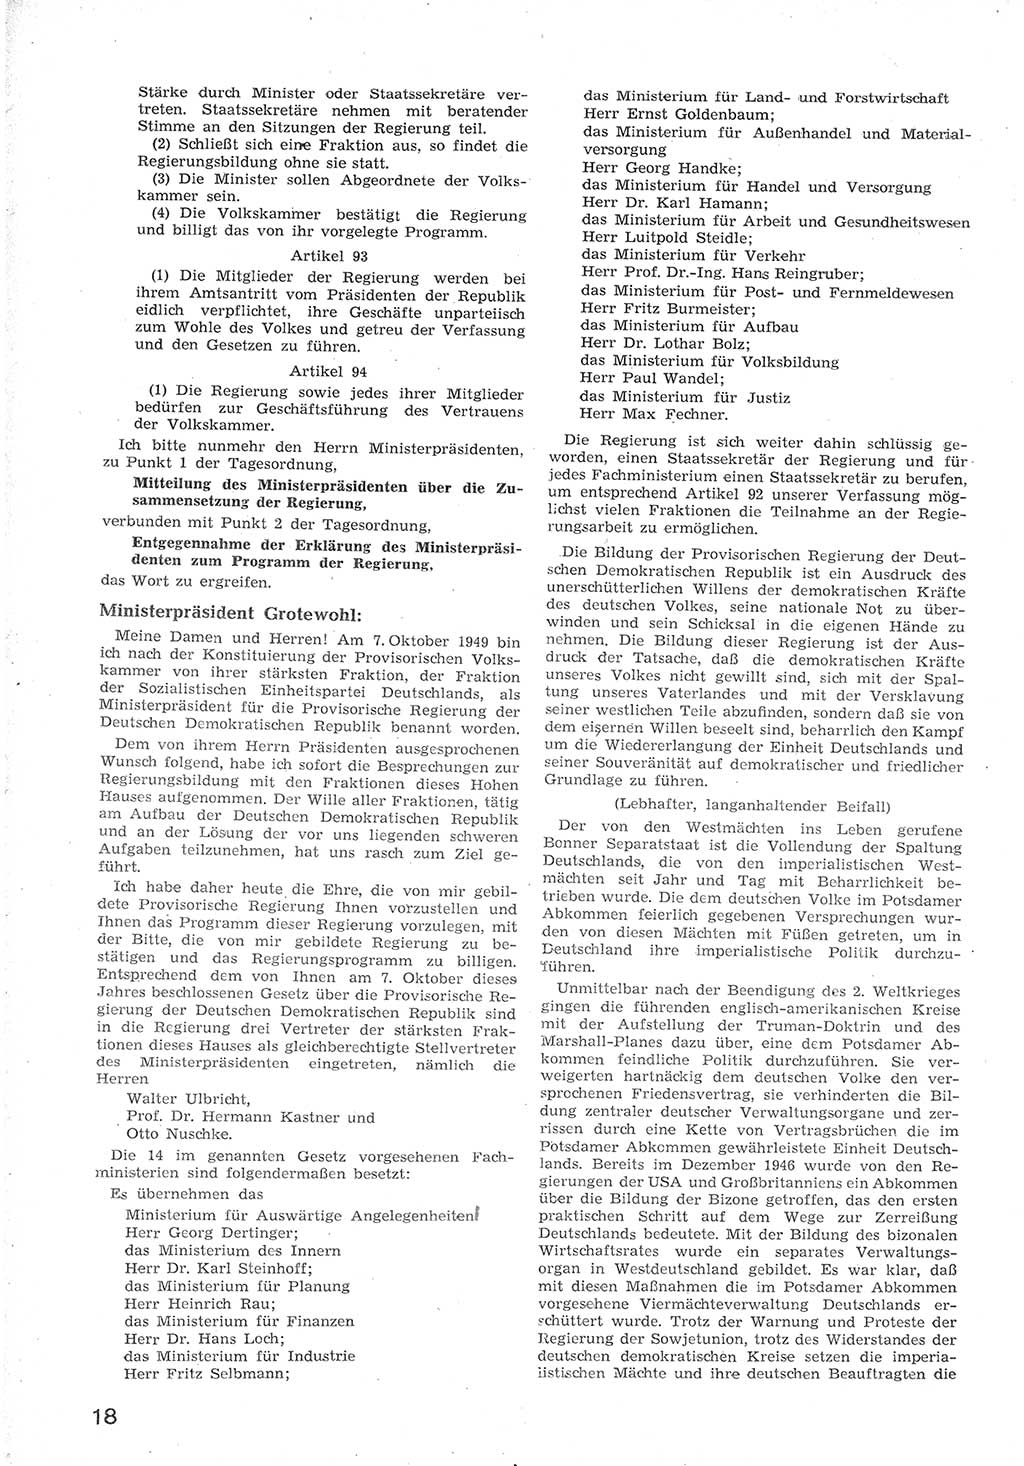 Provisorische Volkskammer (VK) der Deutschen Demokratischen Republik (DDR) 1949-1950, Dokument 30 (Prov. VK DDR 1949-1950, Dok. 30)